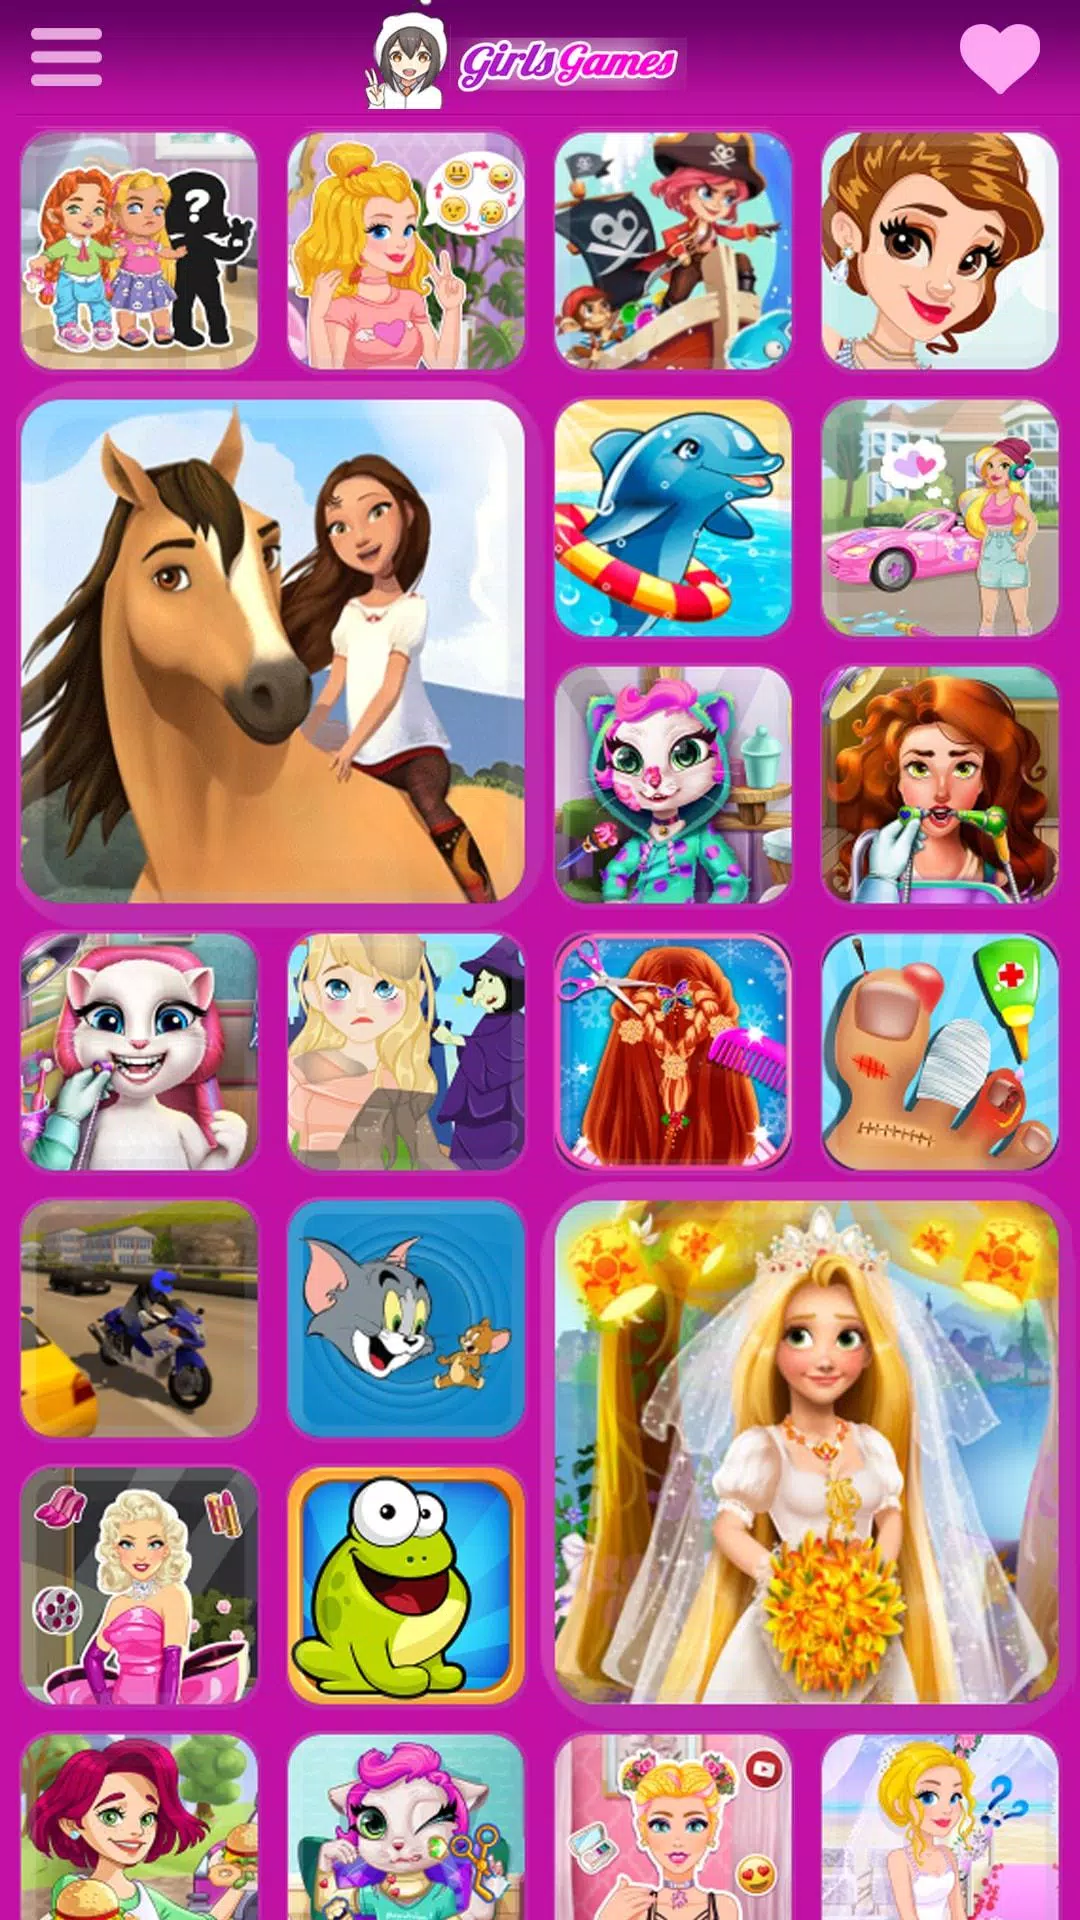 Juegos de chicas - Juegue gratis juegos de chicas en